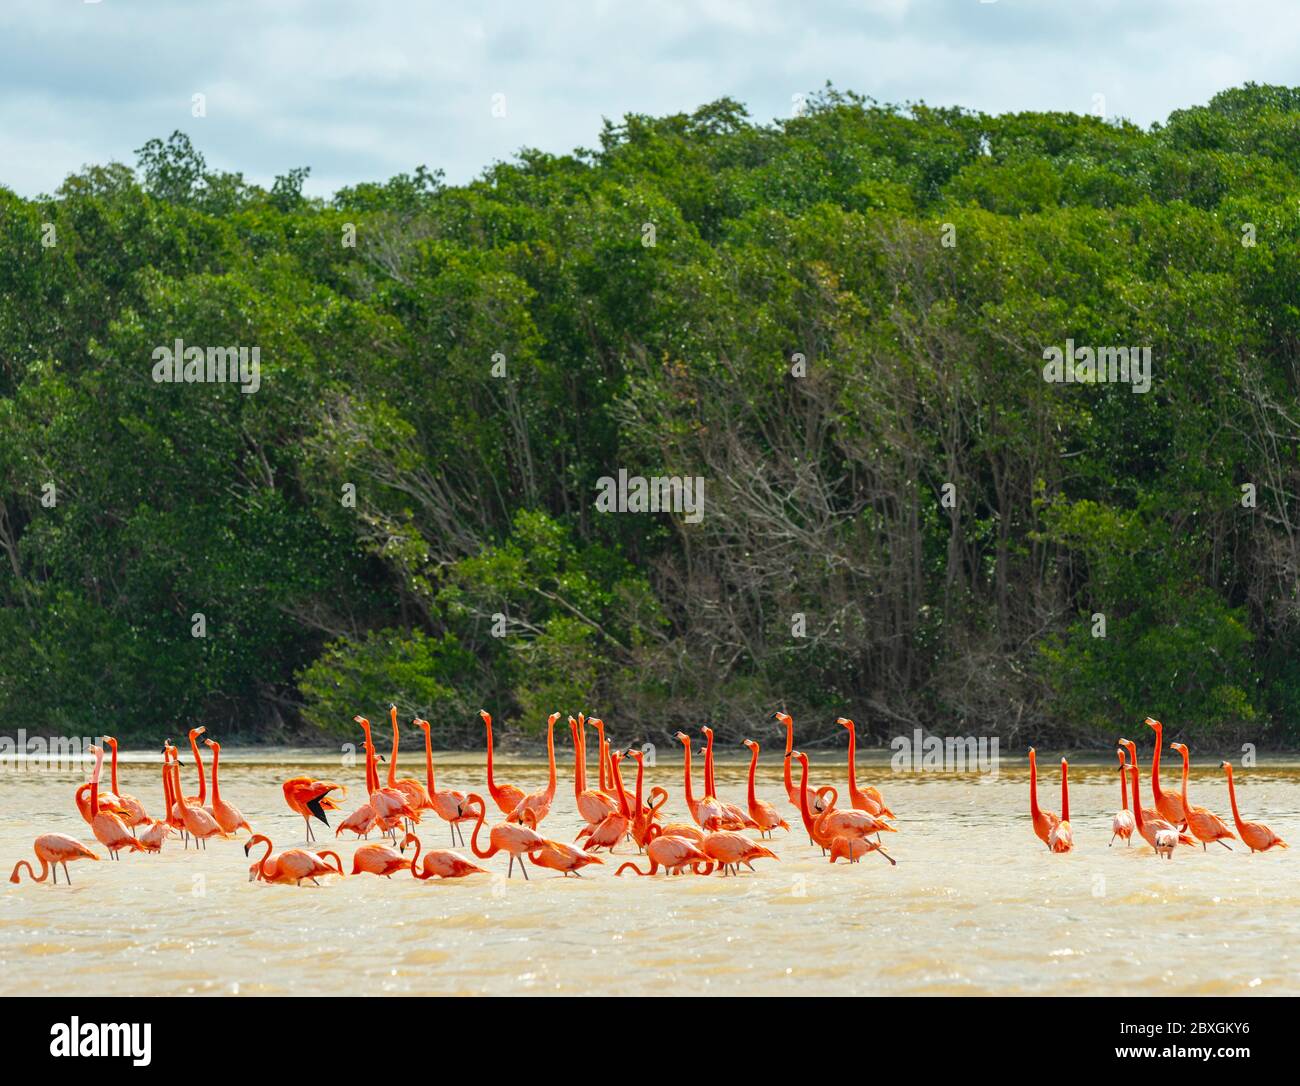 Un gregge di Flamingo Americano (Fenicotterus ruber) in una foresta di mangrovie, Celestun Biosfera Reserve, Penisola dello Yucatan, Messico. Foto Stock